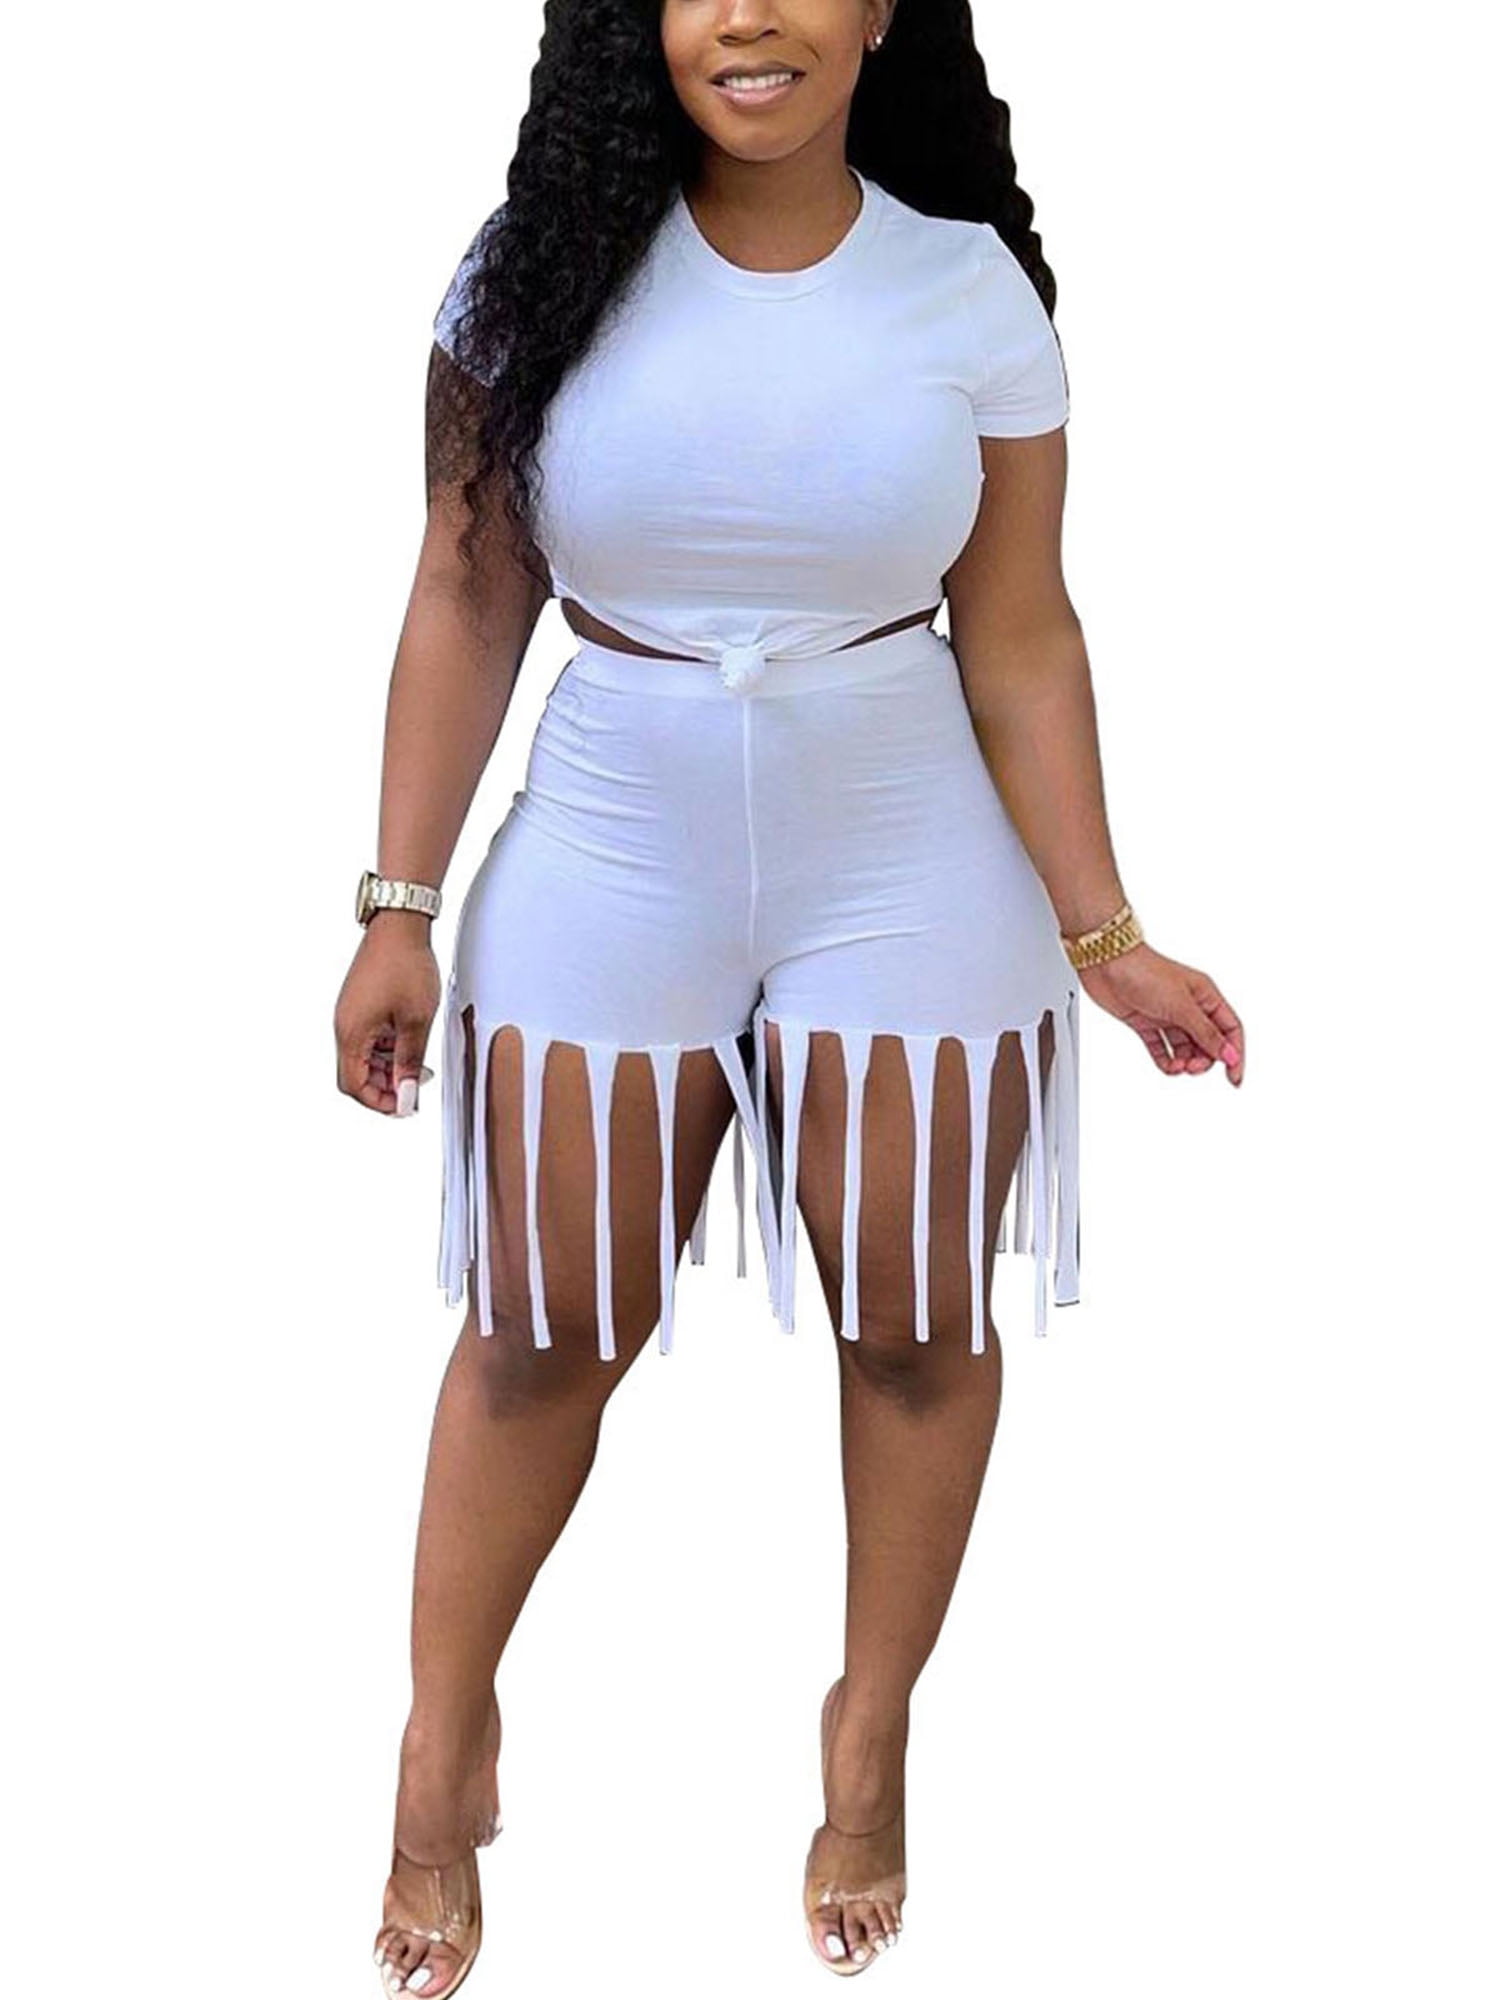 Plus Size Block Short Set Outfit for Women S-3XL Casual Sport 2 Piece Short Sleeve Top Bodycon Short Pants Set 